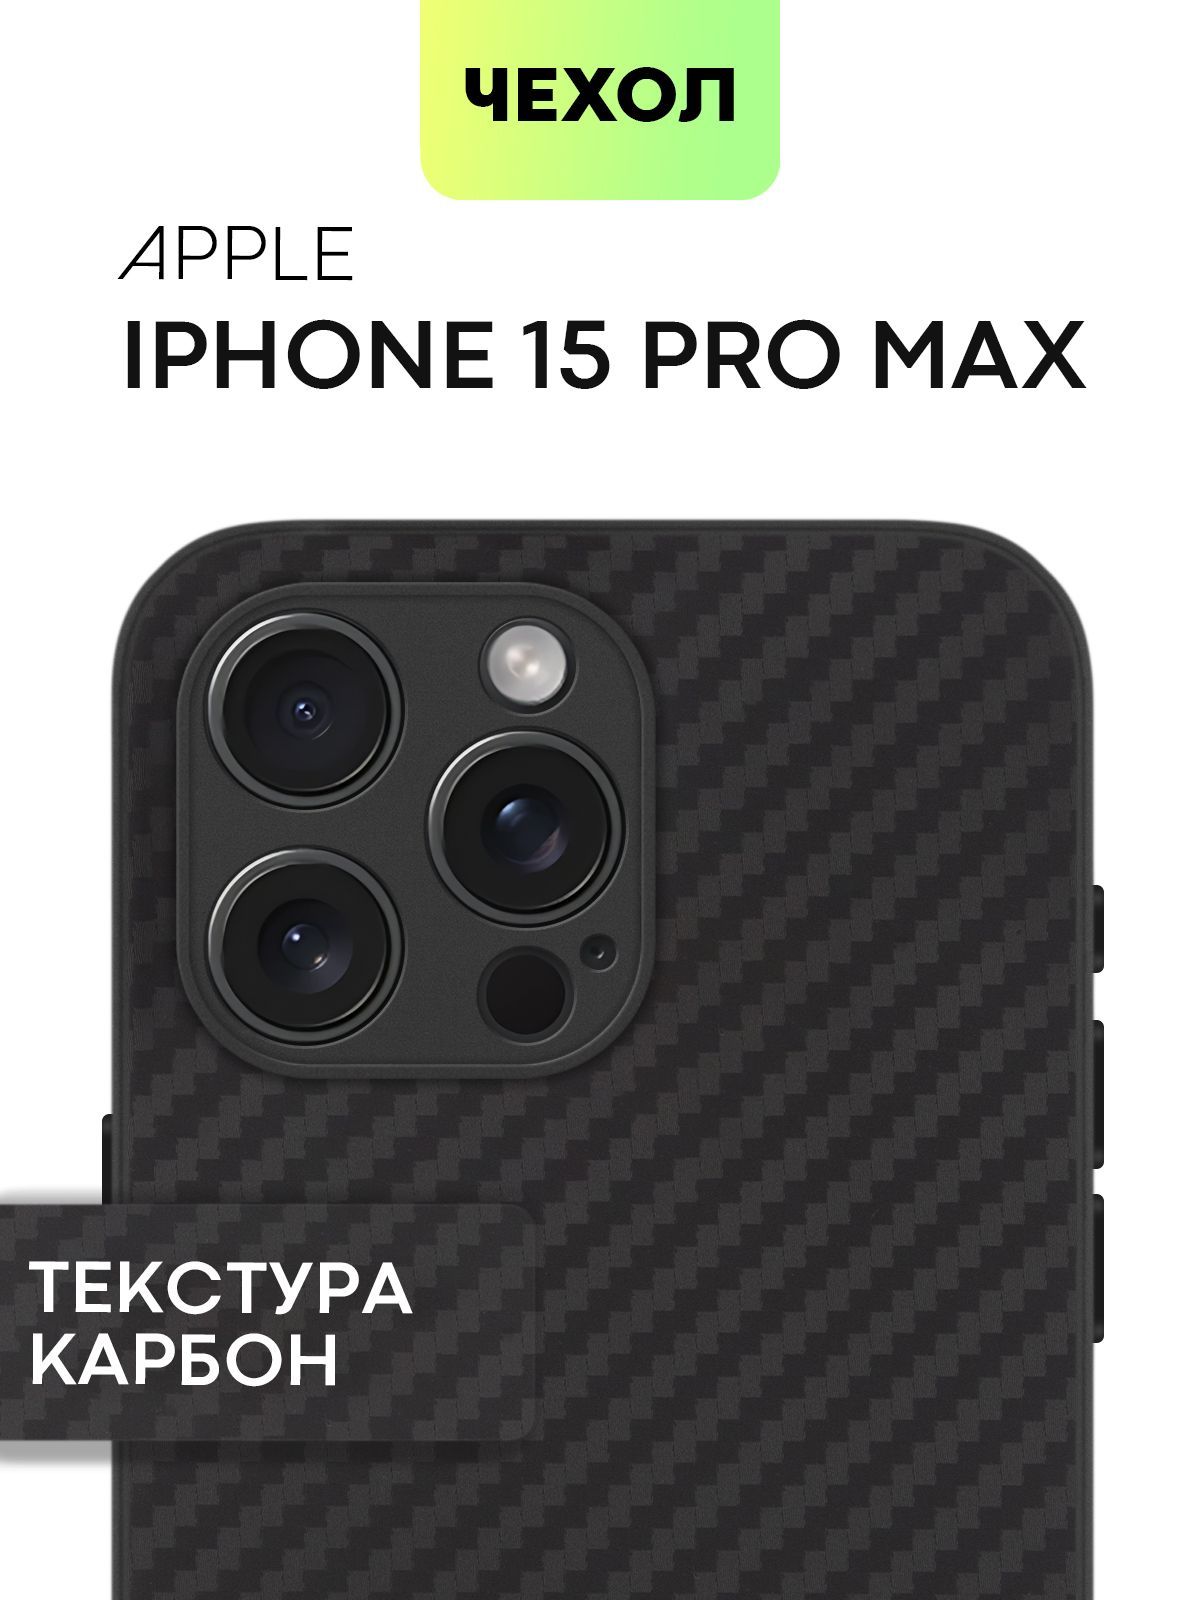 Чехол для iPhone 15 Pro Max (Айфон 15 Про Макс), текстура карбон чёрный, BROSCORP